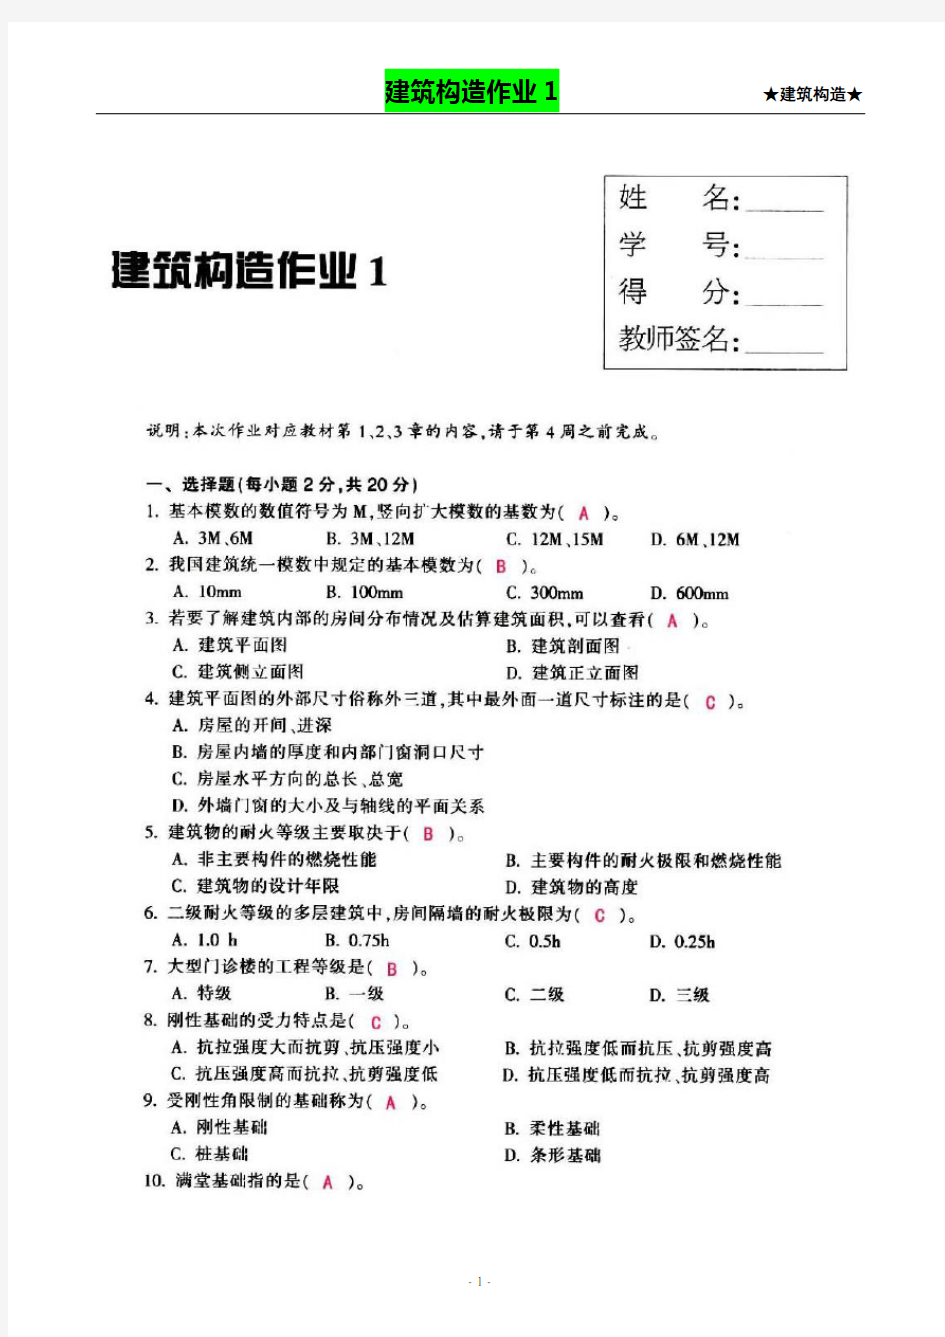 【建筑构造作业】形成性考核作业册答案(1-4)